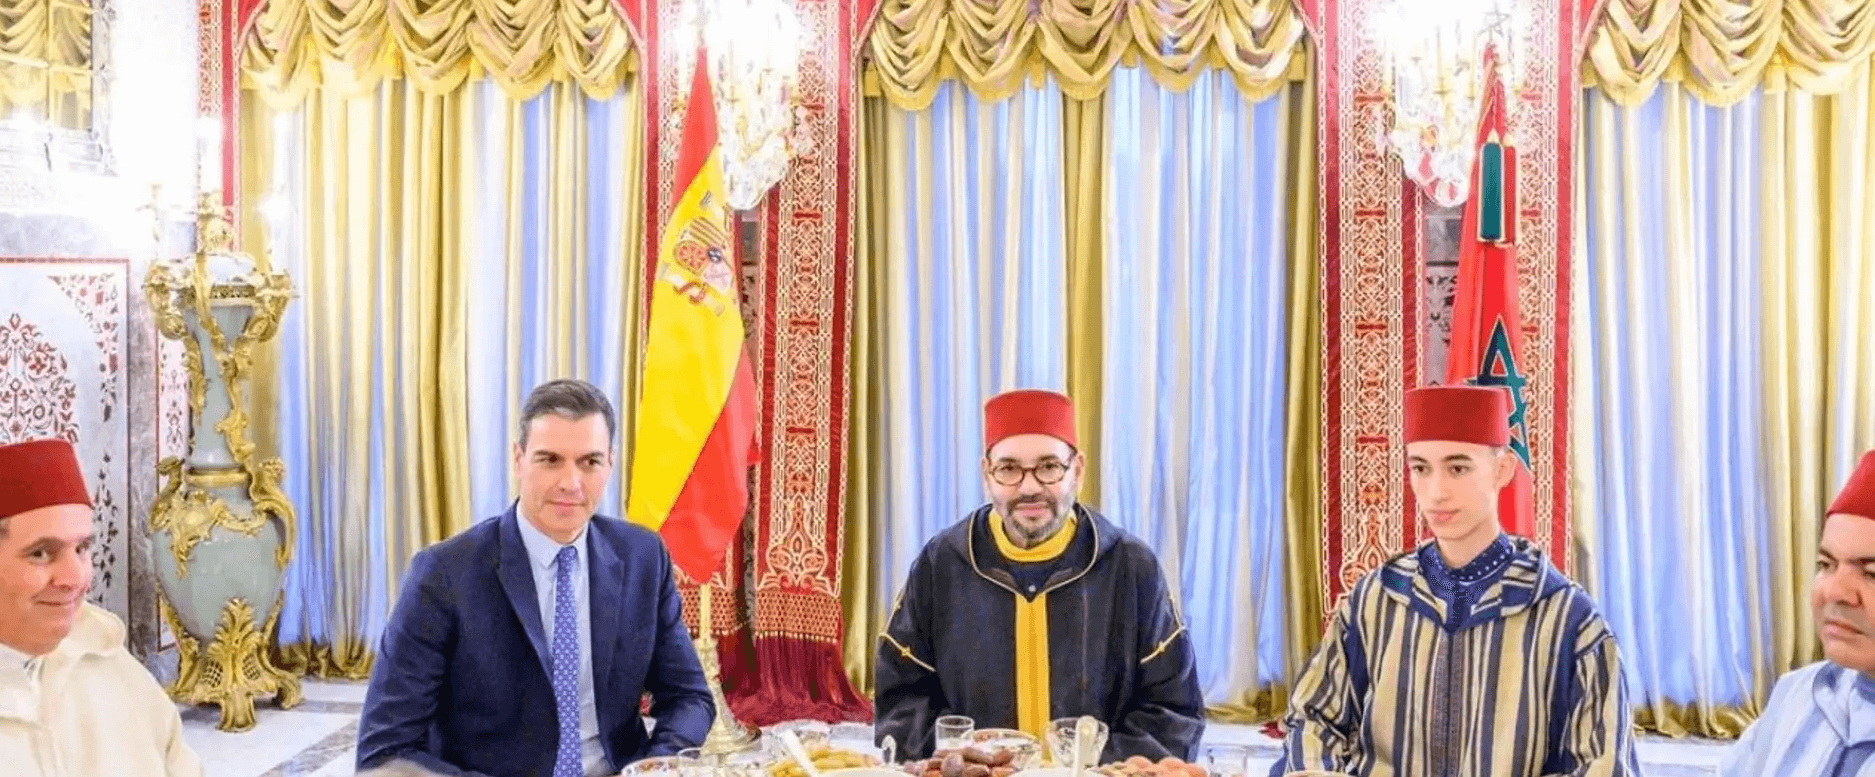 relaciones España Marruecos